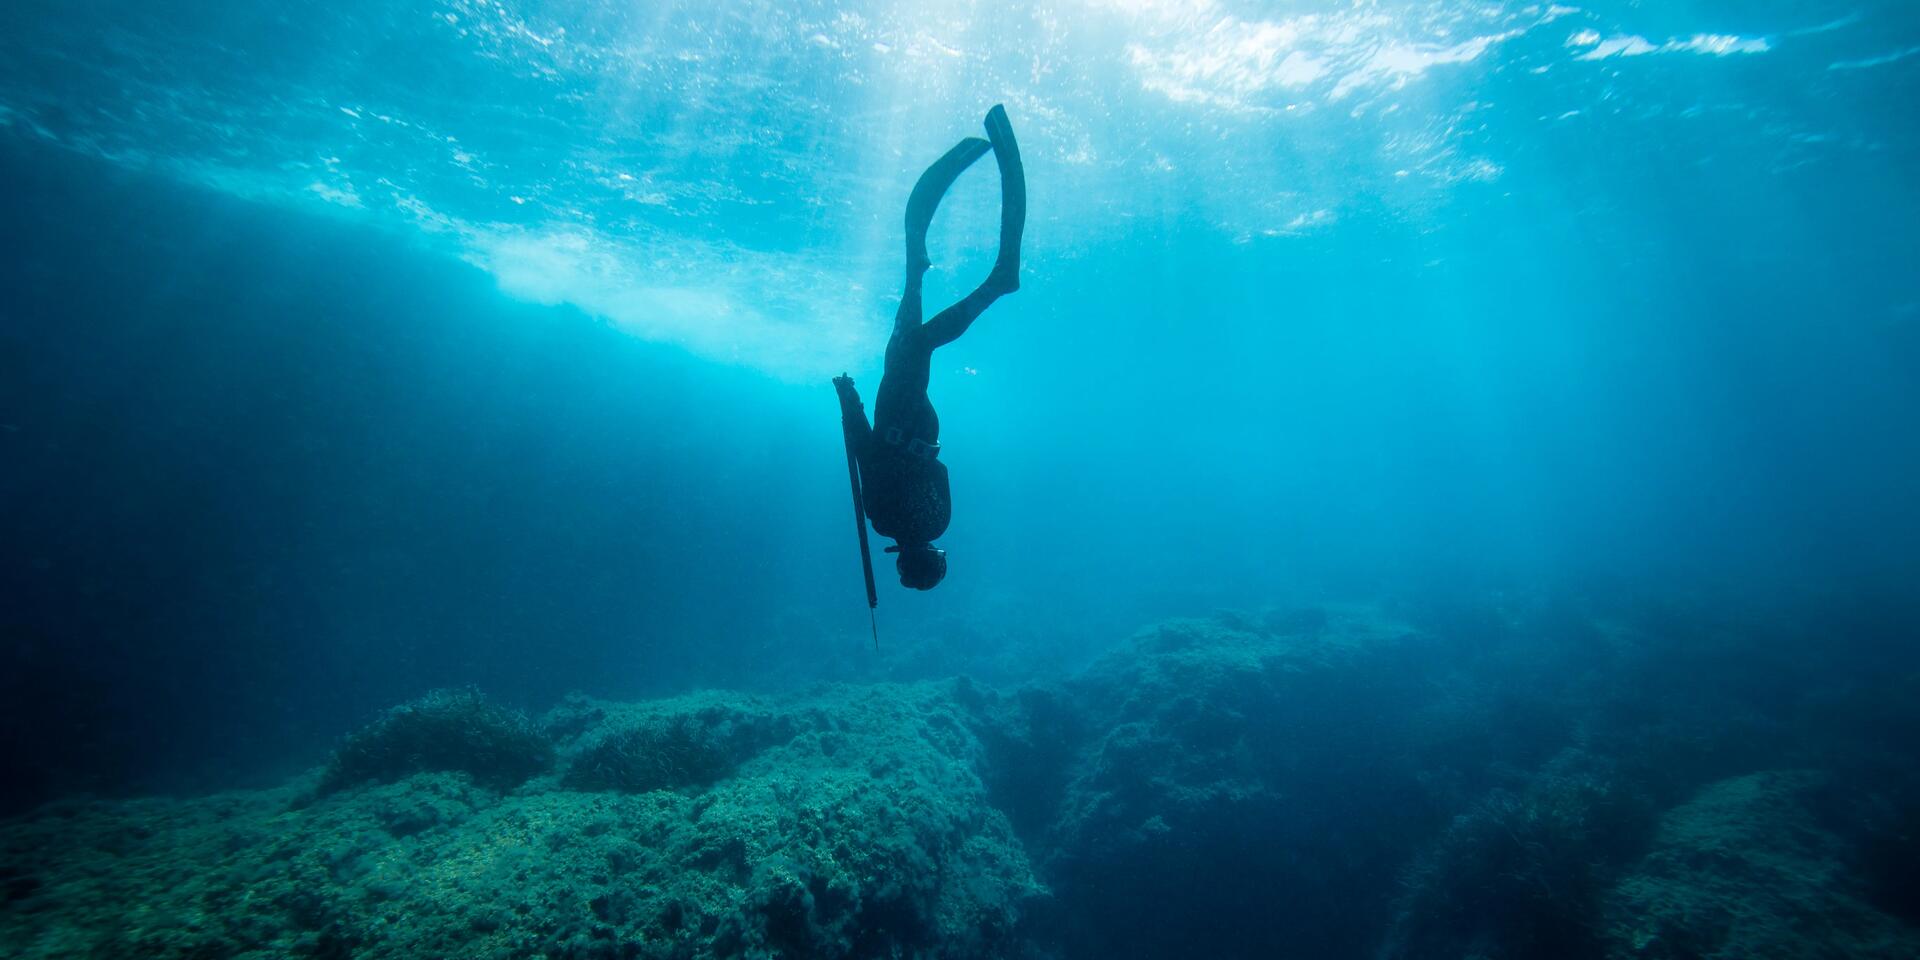 osoba w stroju nurkowym uprawiająca freediving